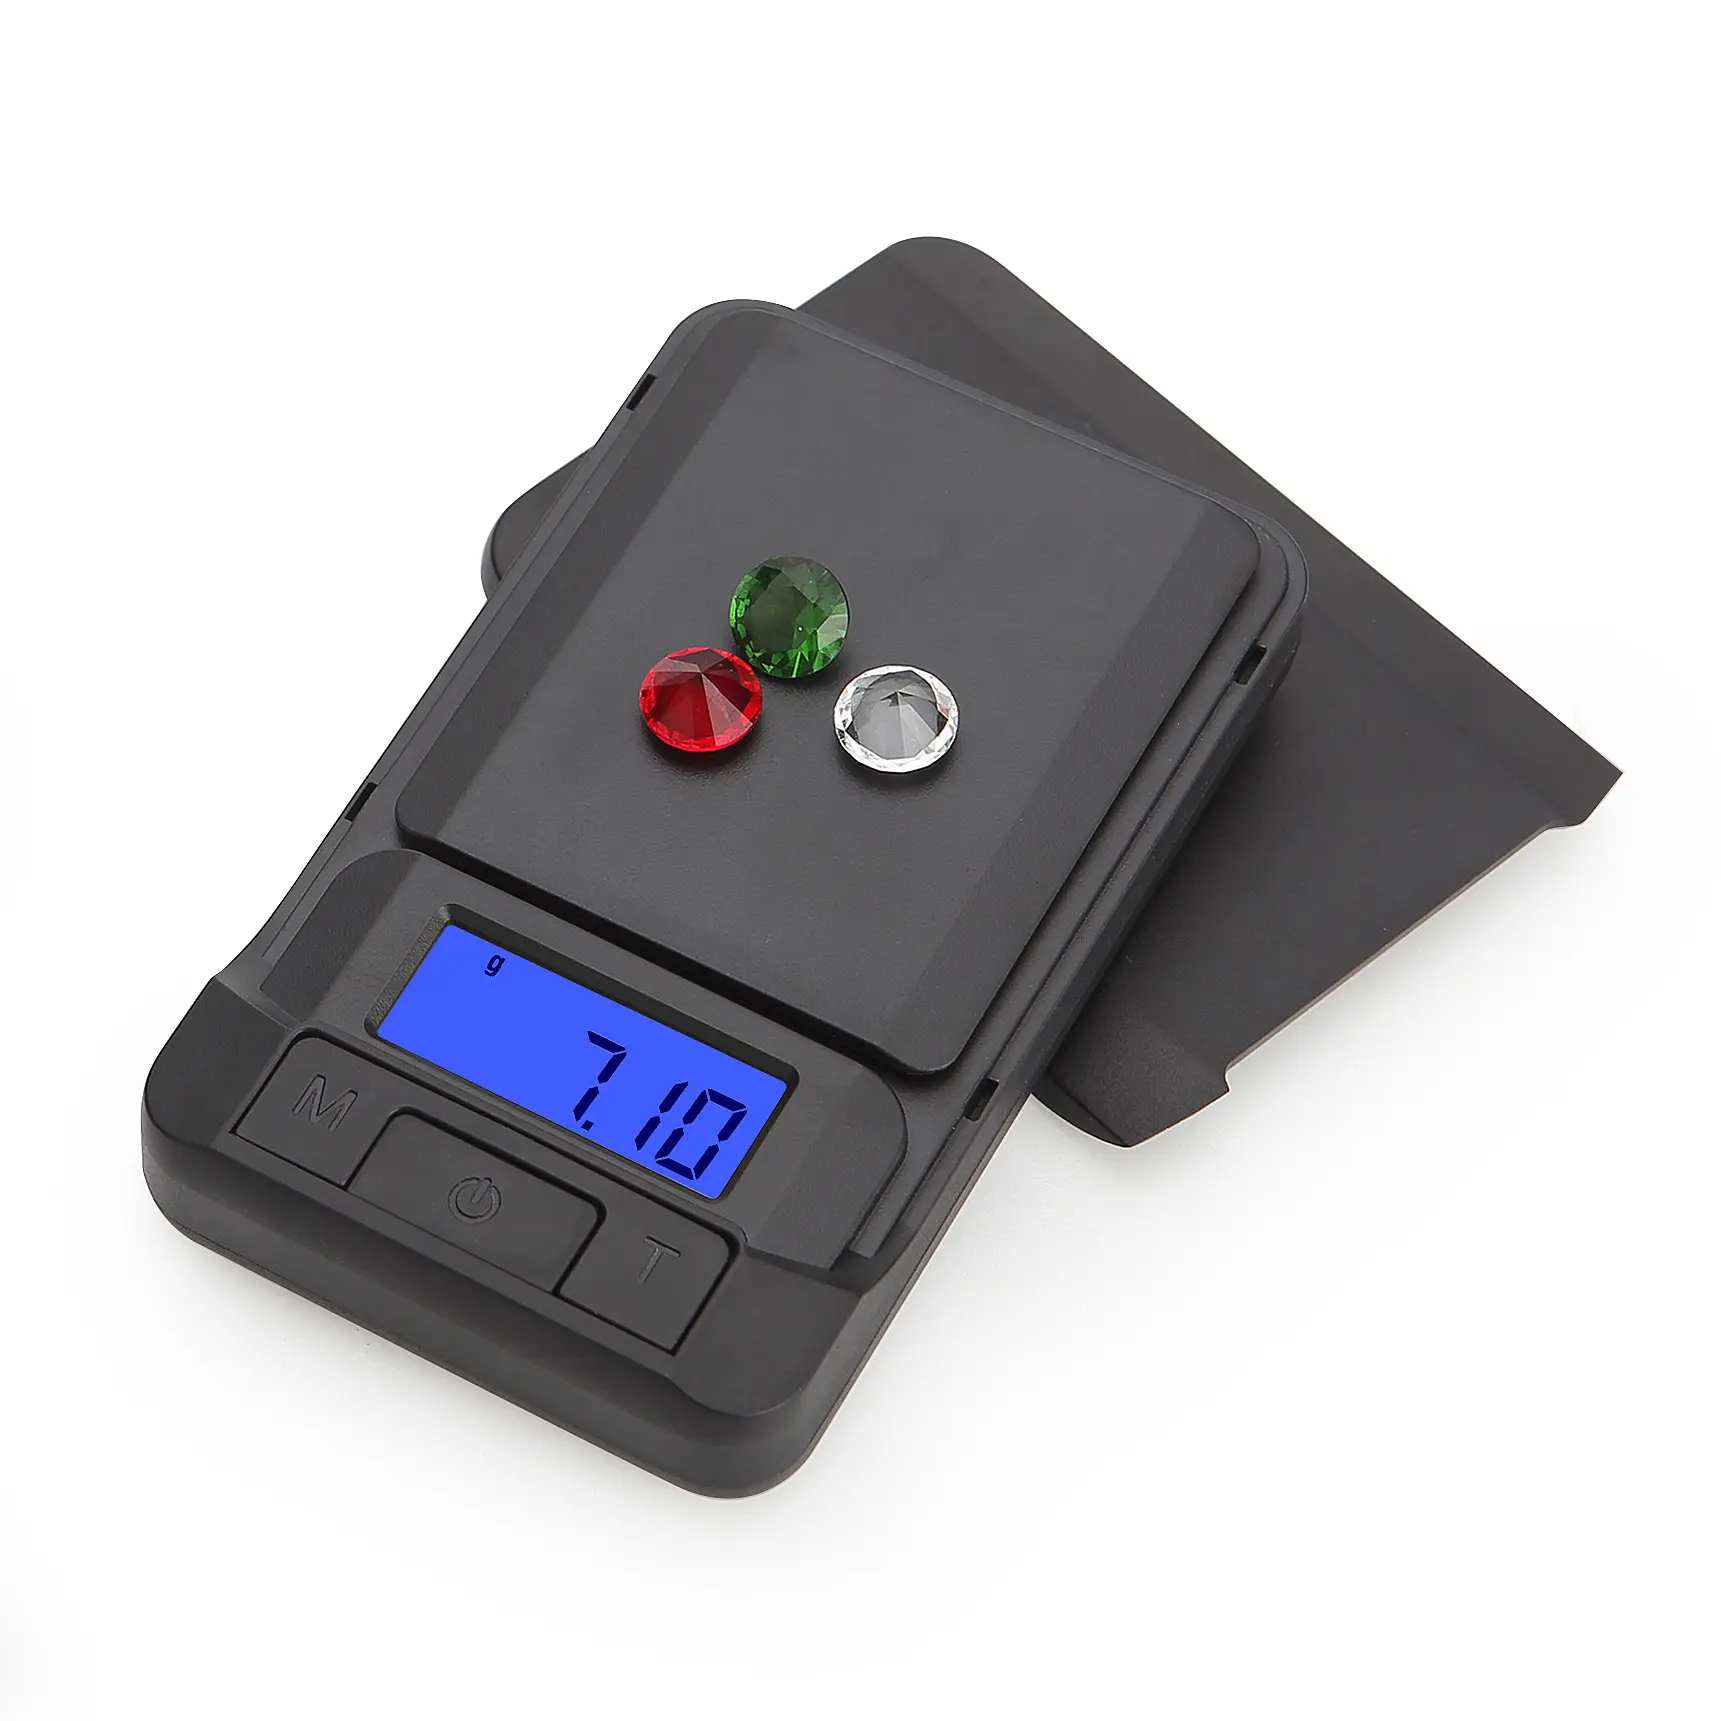 Balança eletrônica digital de alta precisão com logotipo personalizado, mini balança de bolso, 100g, 200g, 1kg, 0.1g, mini balança ABS para joias, pequena